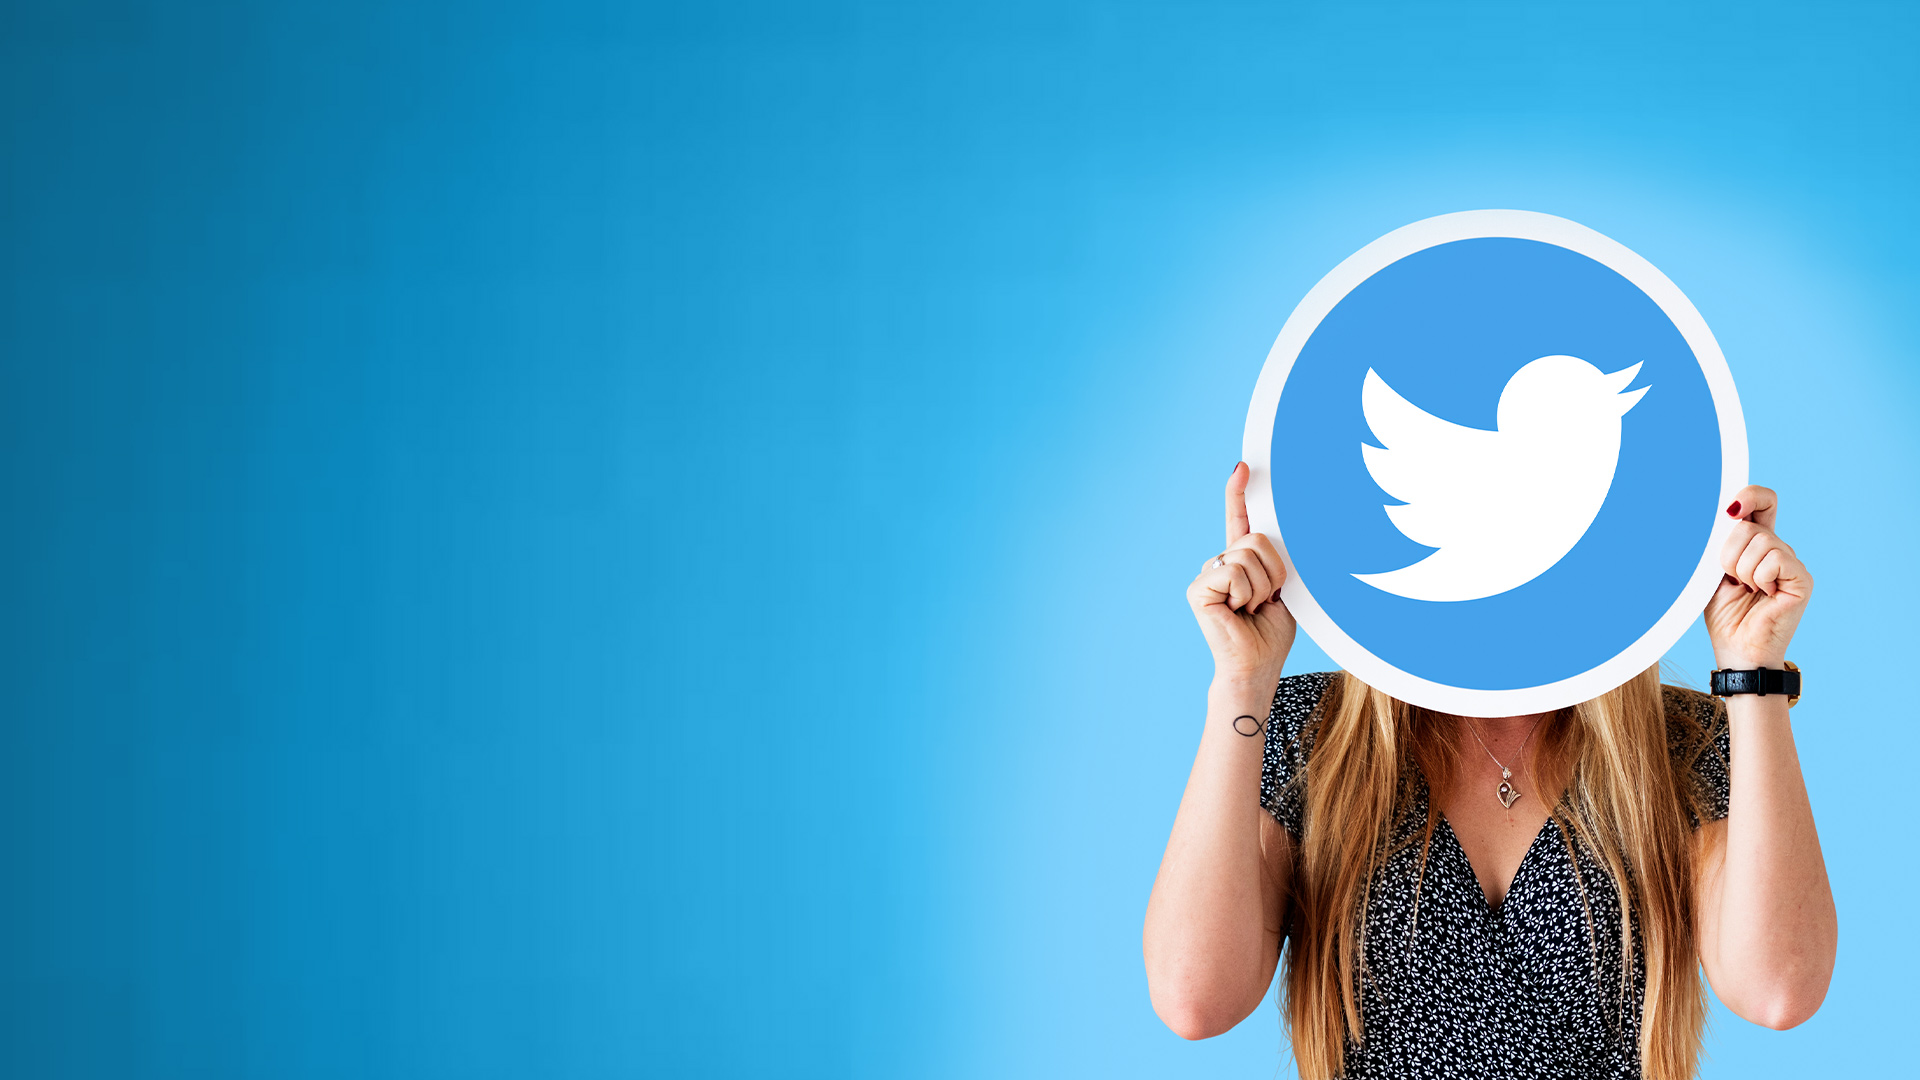 O Twitter está “dando” seguidores para influenciadores de direita? - Instituto Millenium